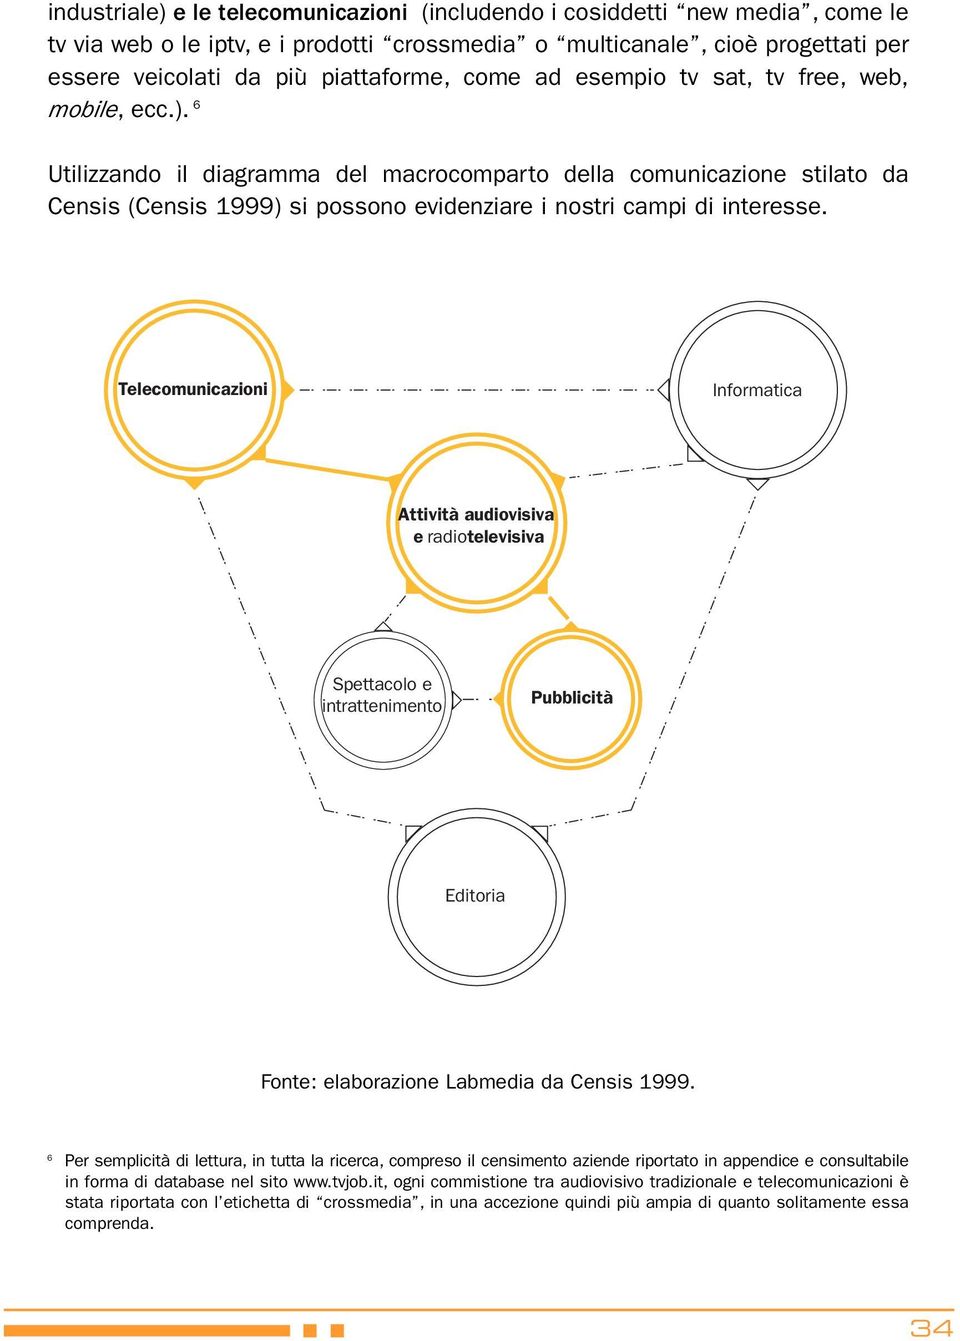 6 Utilizzando il diagramma del macrocomparto della comunicazione stilato da Censis (Censis 1999) si possono evidenziare i nostri campi di interesse.